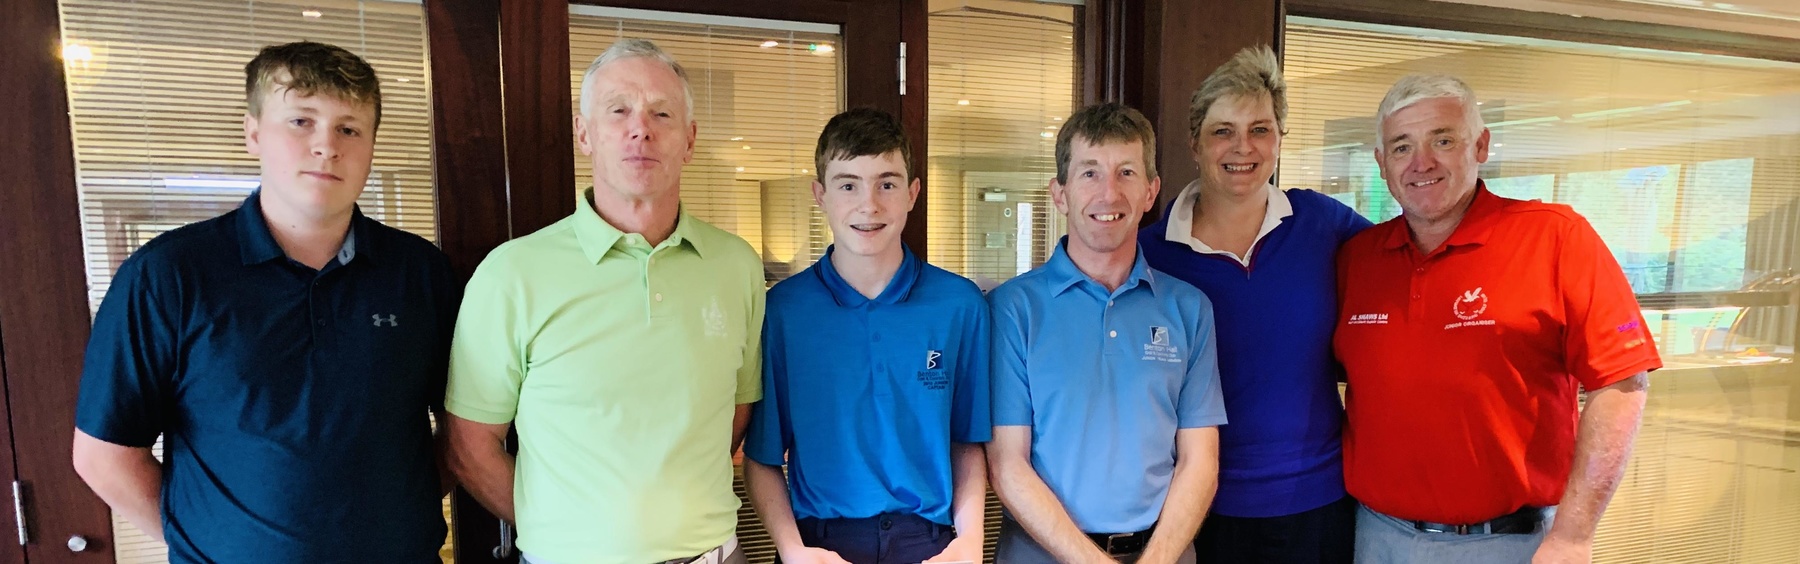 GolfSixes winnerscrop 2019